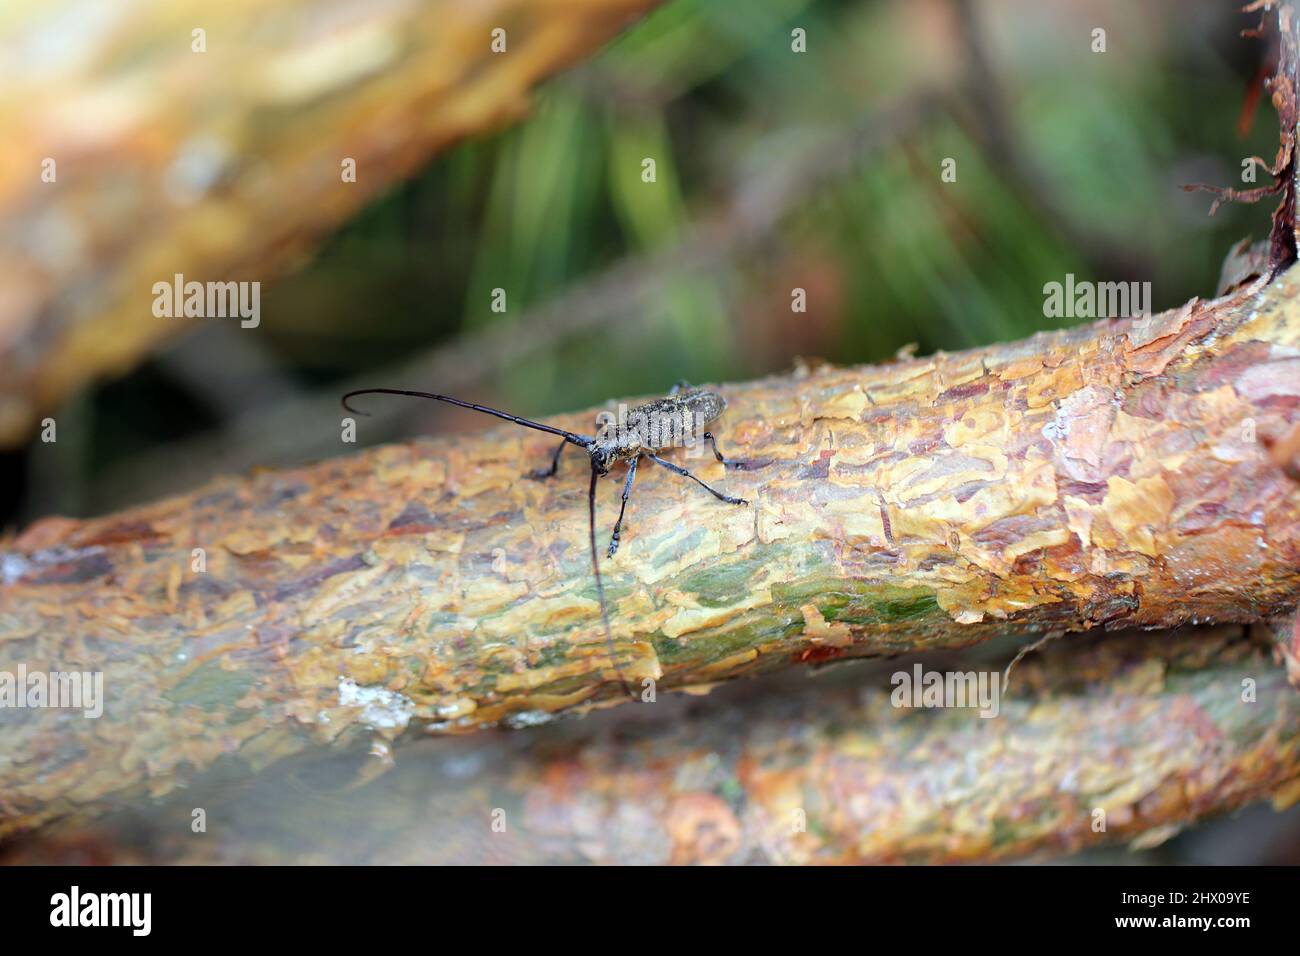 Der Kiefer-sawyer-Käfer, auch als der schwarze Kiefer-sawyer-Käfer - Monochamus galloprovincialis bezeichnet. Es ist eine Pest von Kiefern in Wäldern. Stockfoto